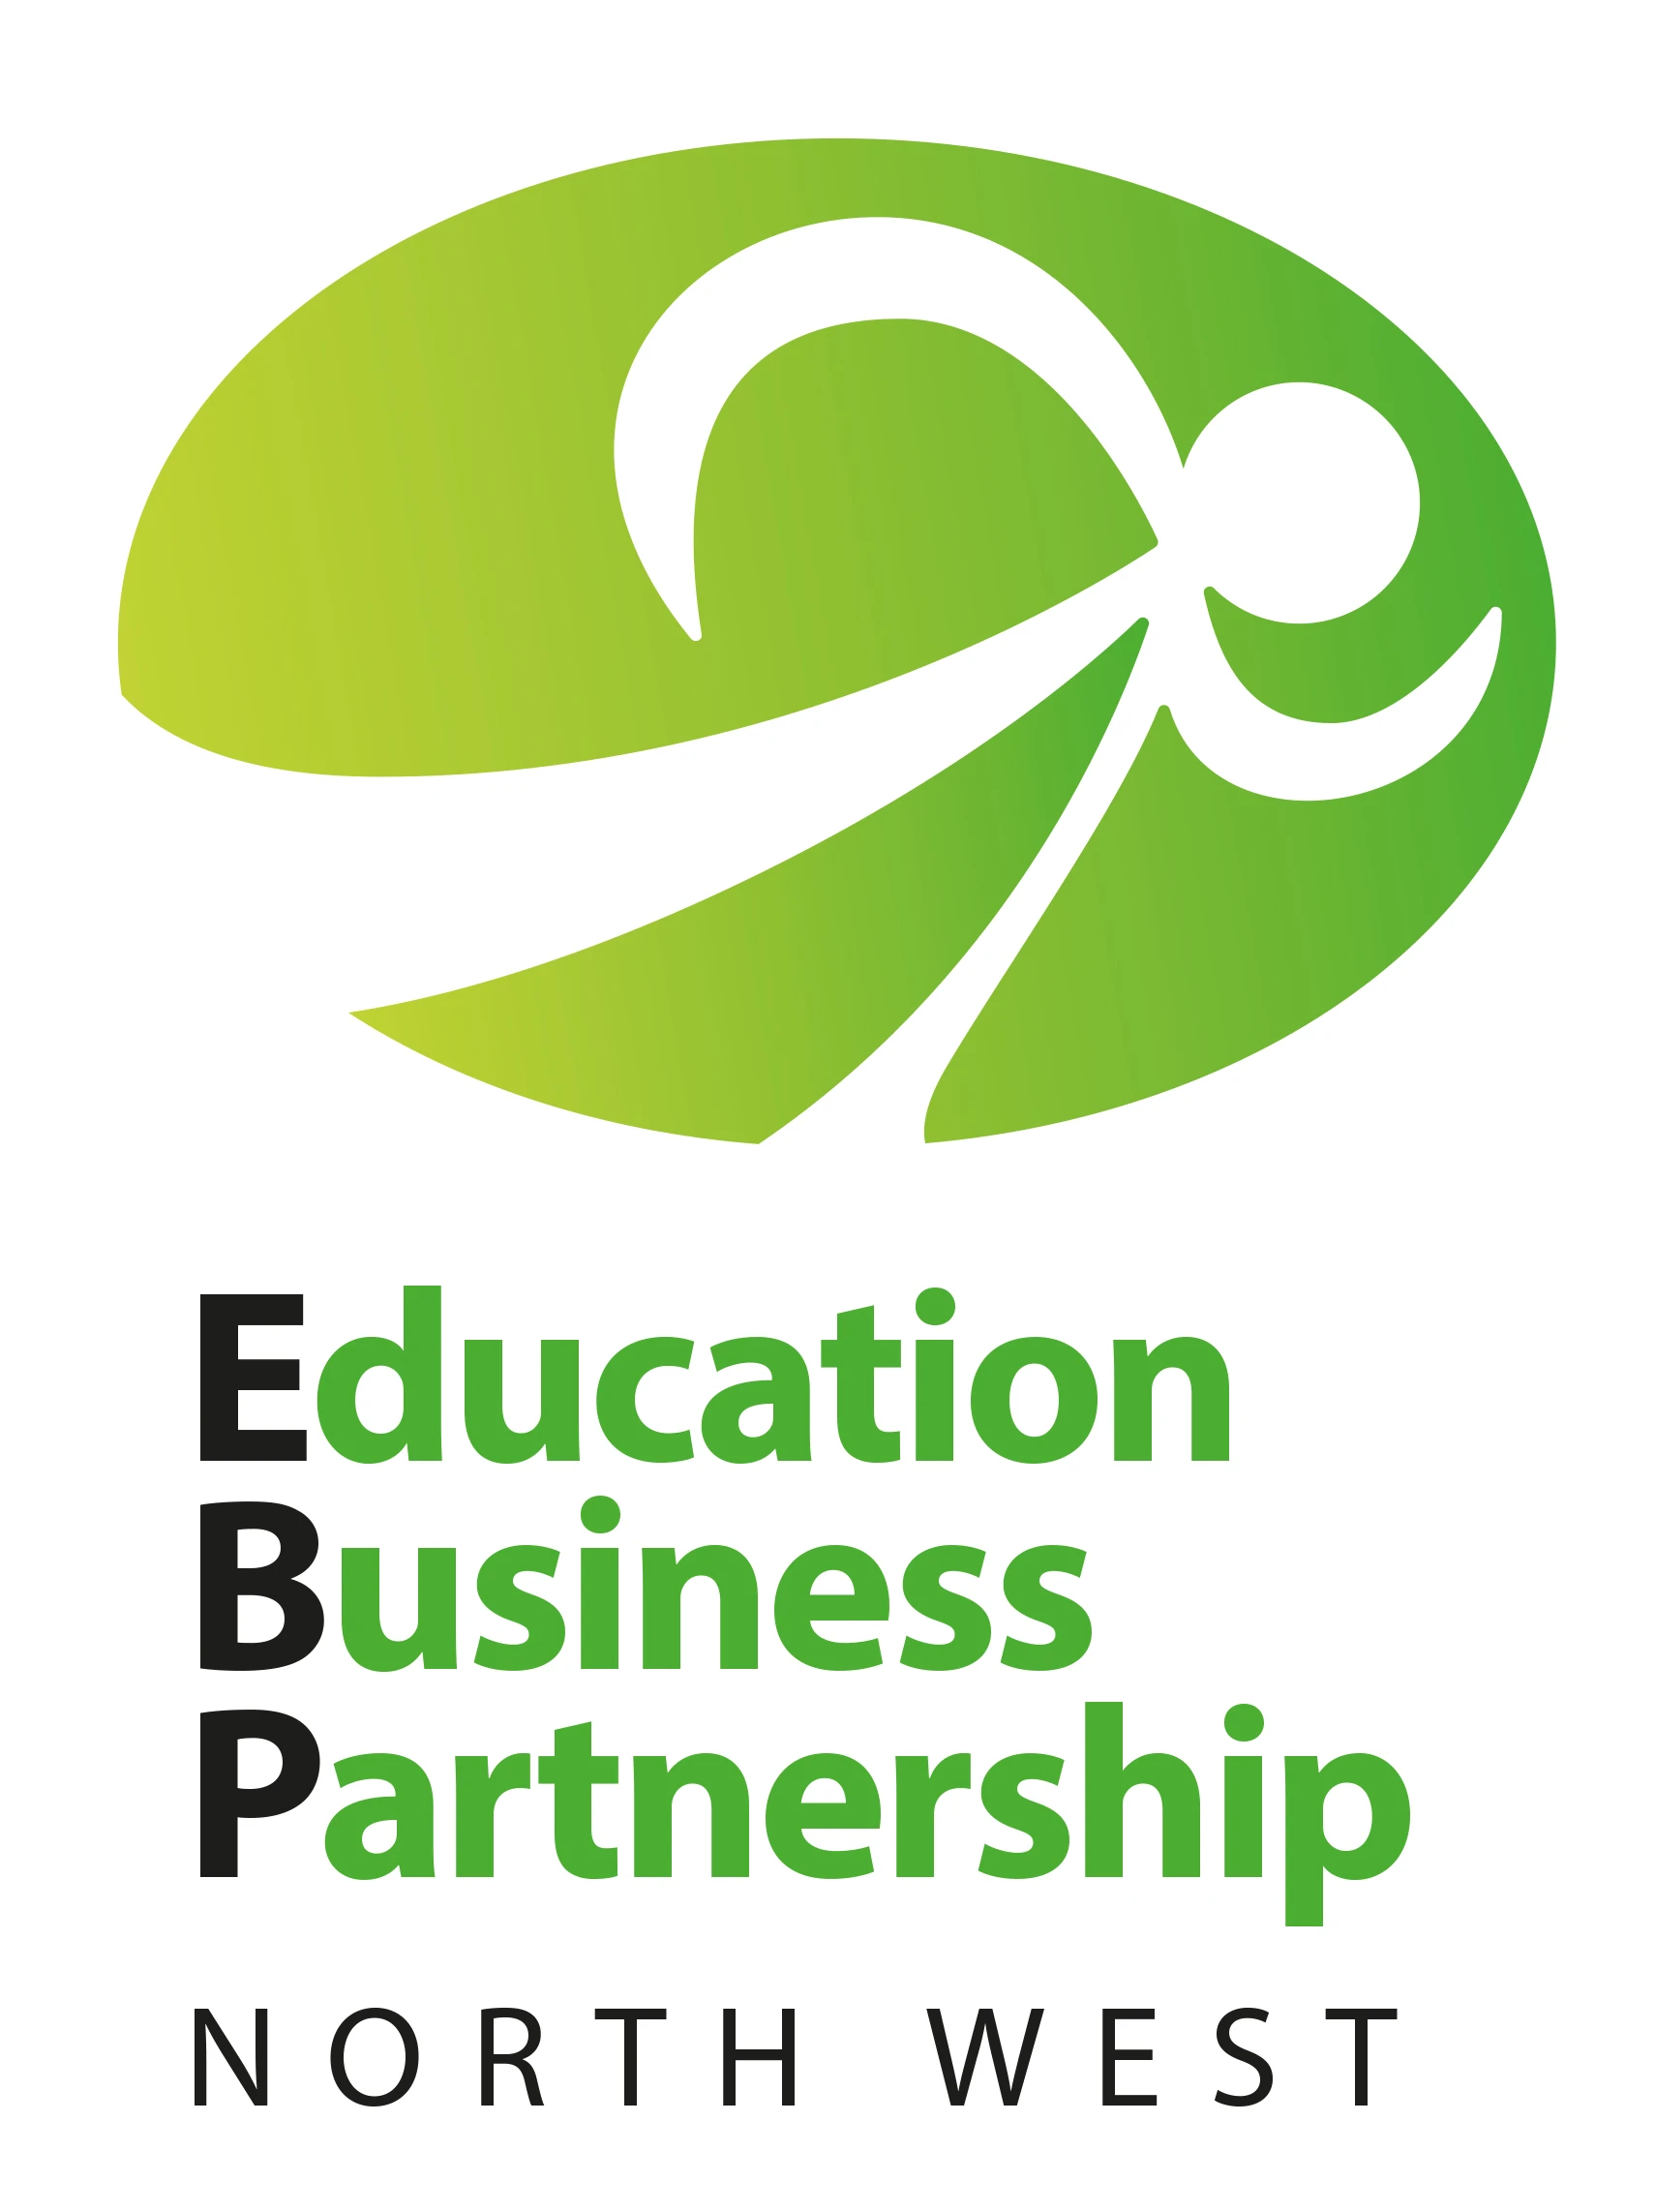 Education Business Partnership (NW) Logo